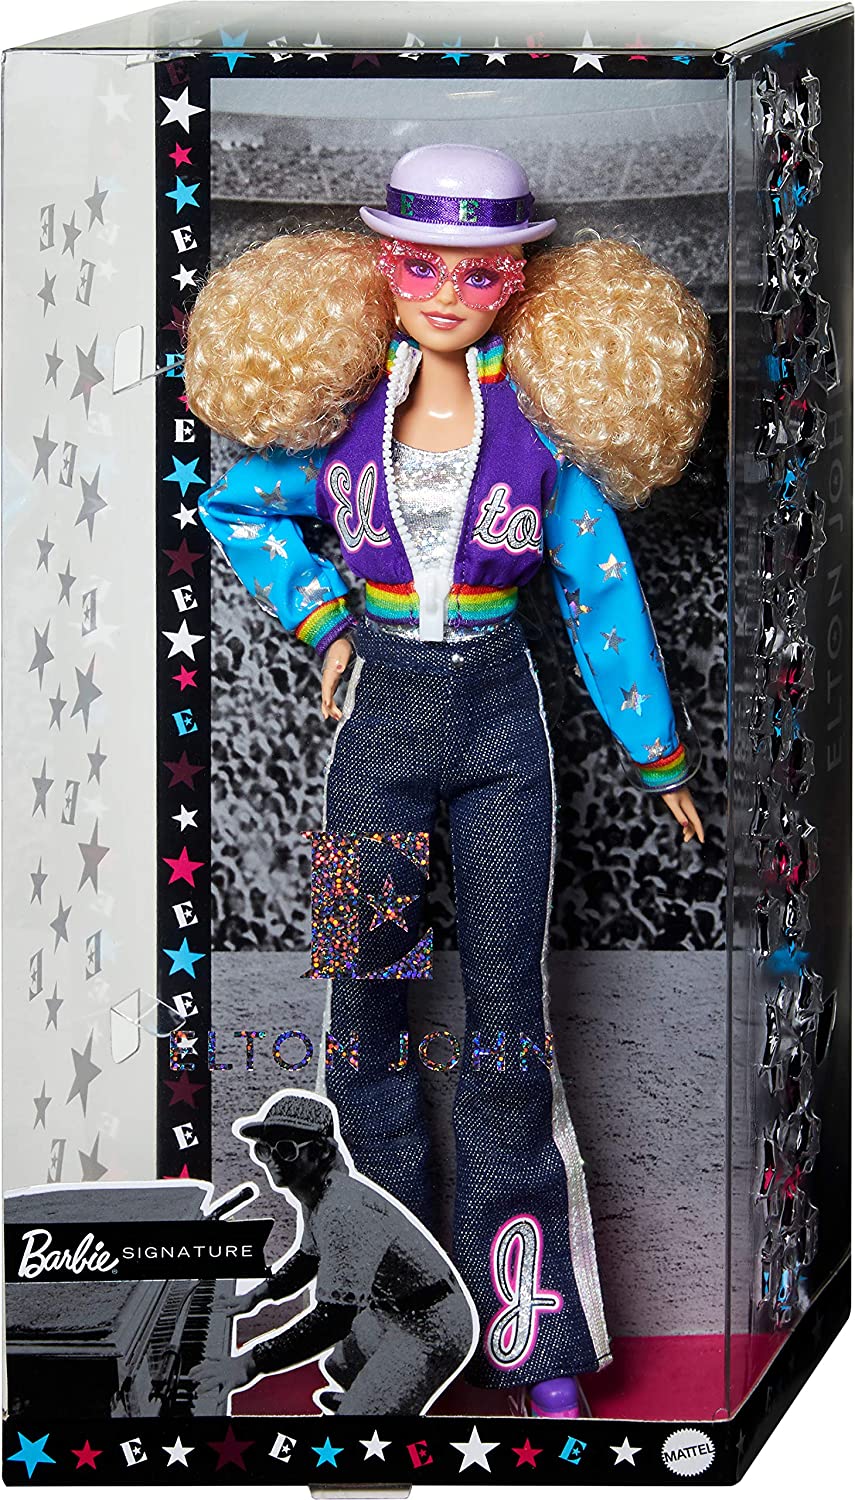 Barbie Signature Elton John doll